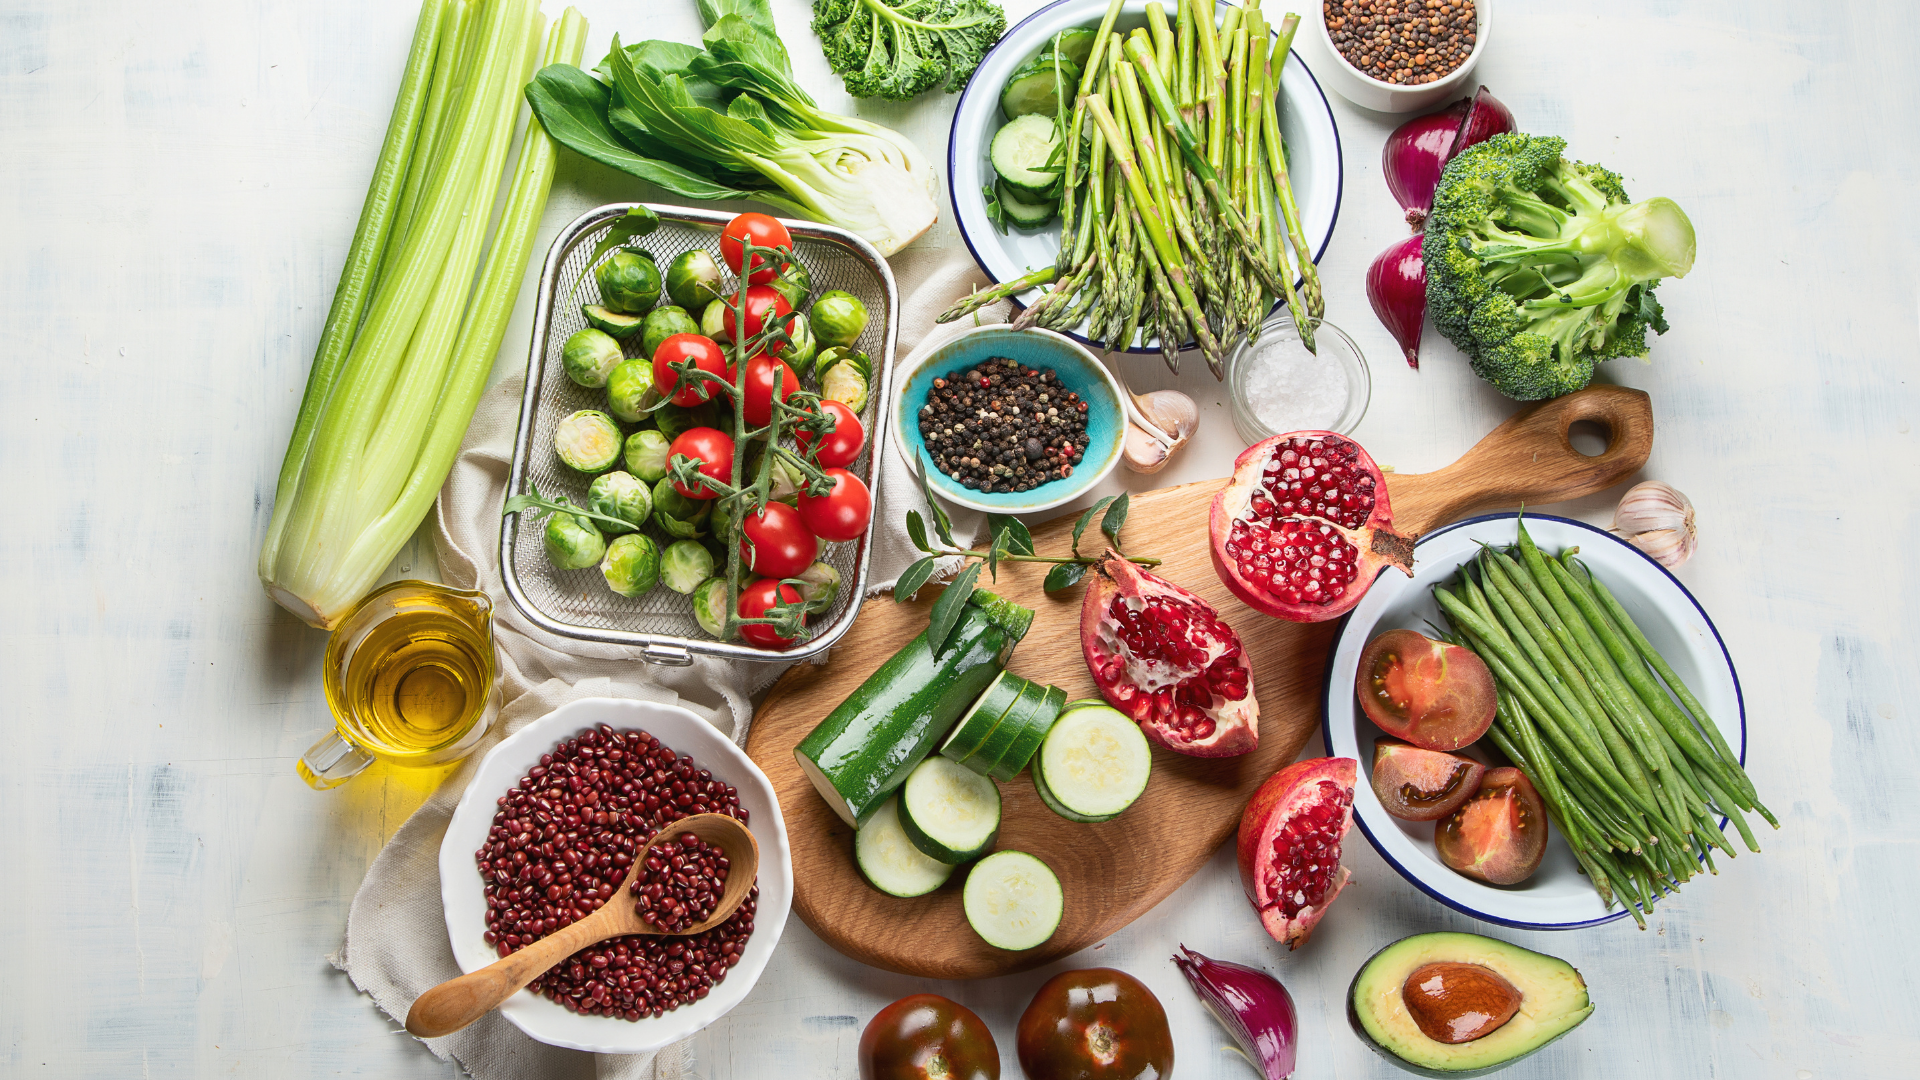 Produkte zum vegan werden, lauter Gemüse und pflanzliche Lebensmittel, von oben fotografiert 